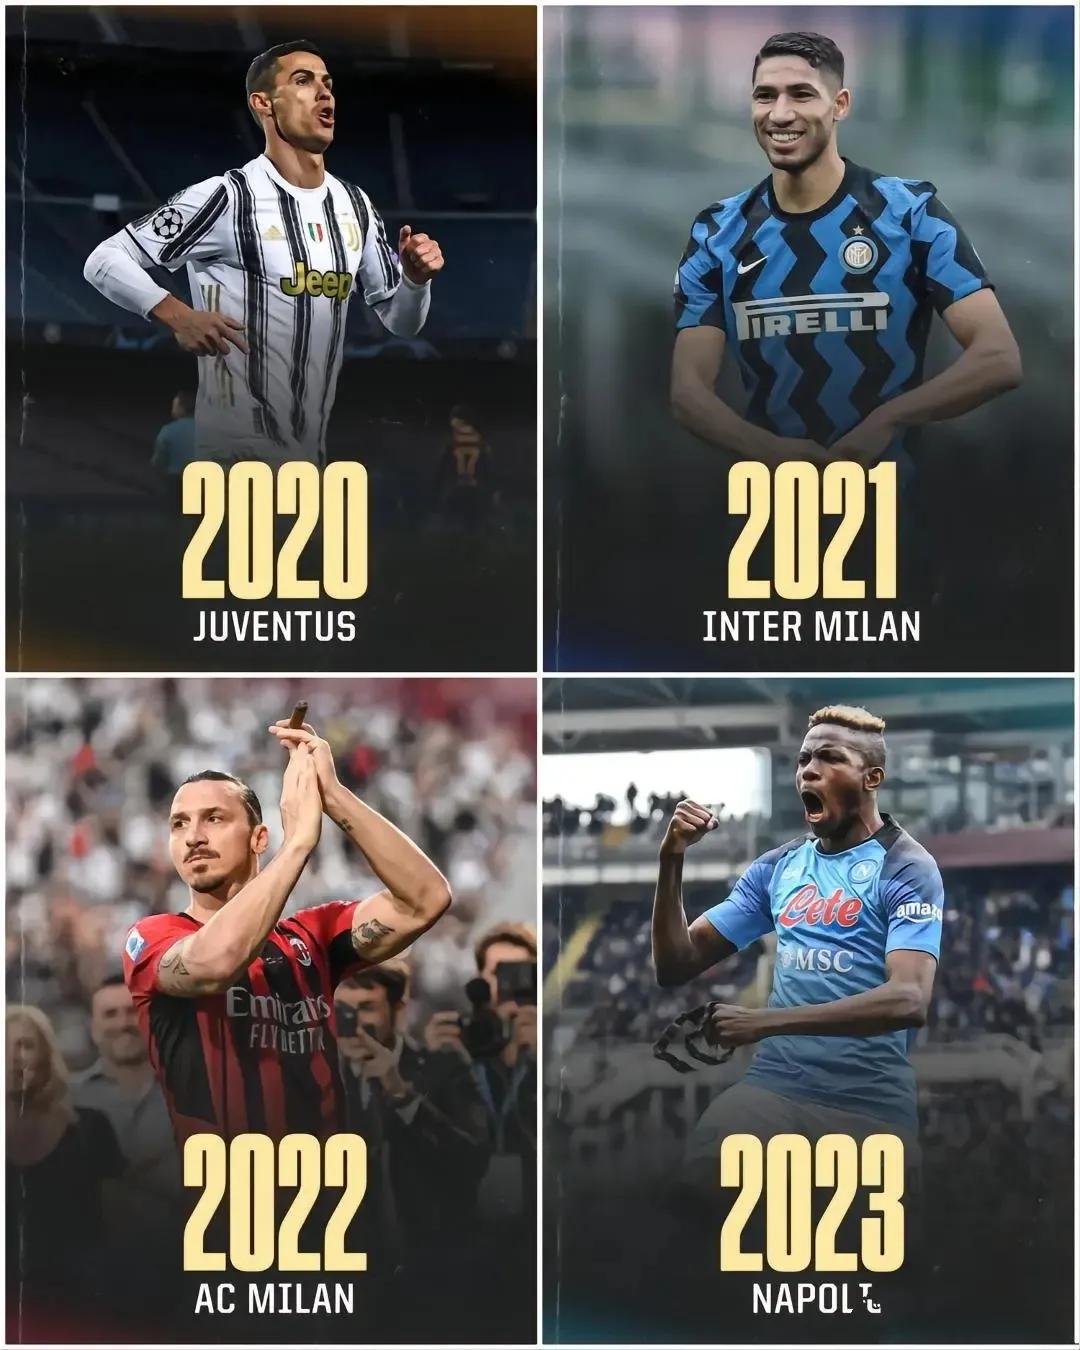 现在意甲联赛每年换一个冠军，明年会是罗马双雄吗？

2020年冠军尤文图斯。

